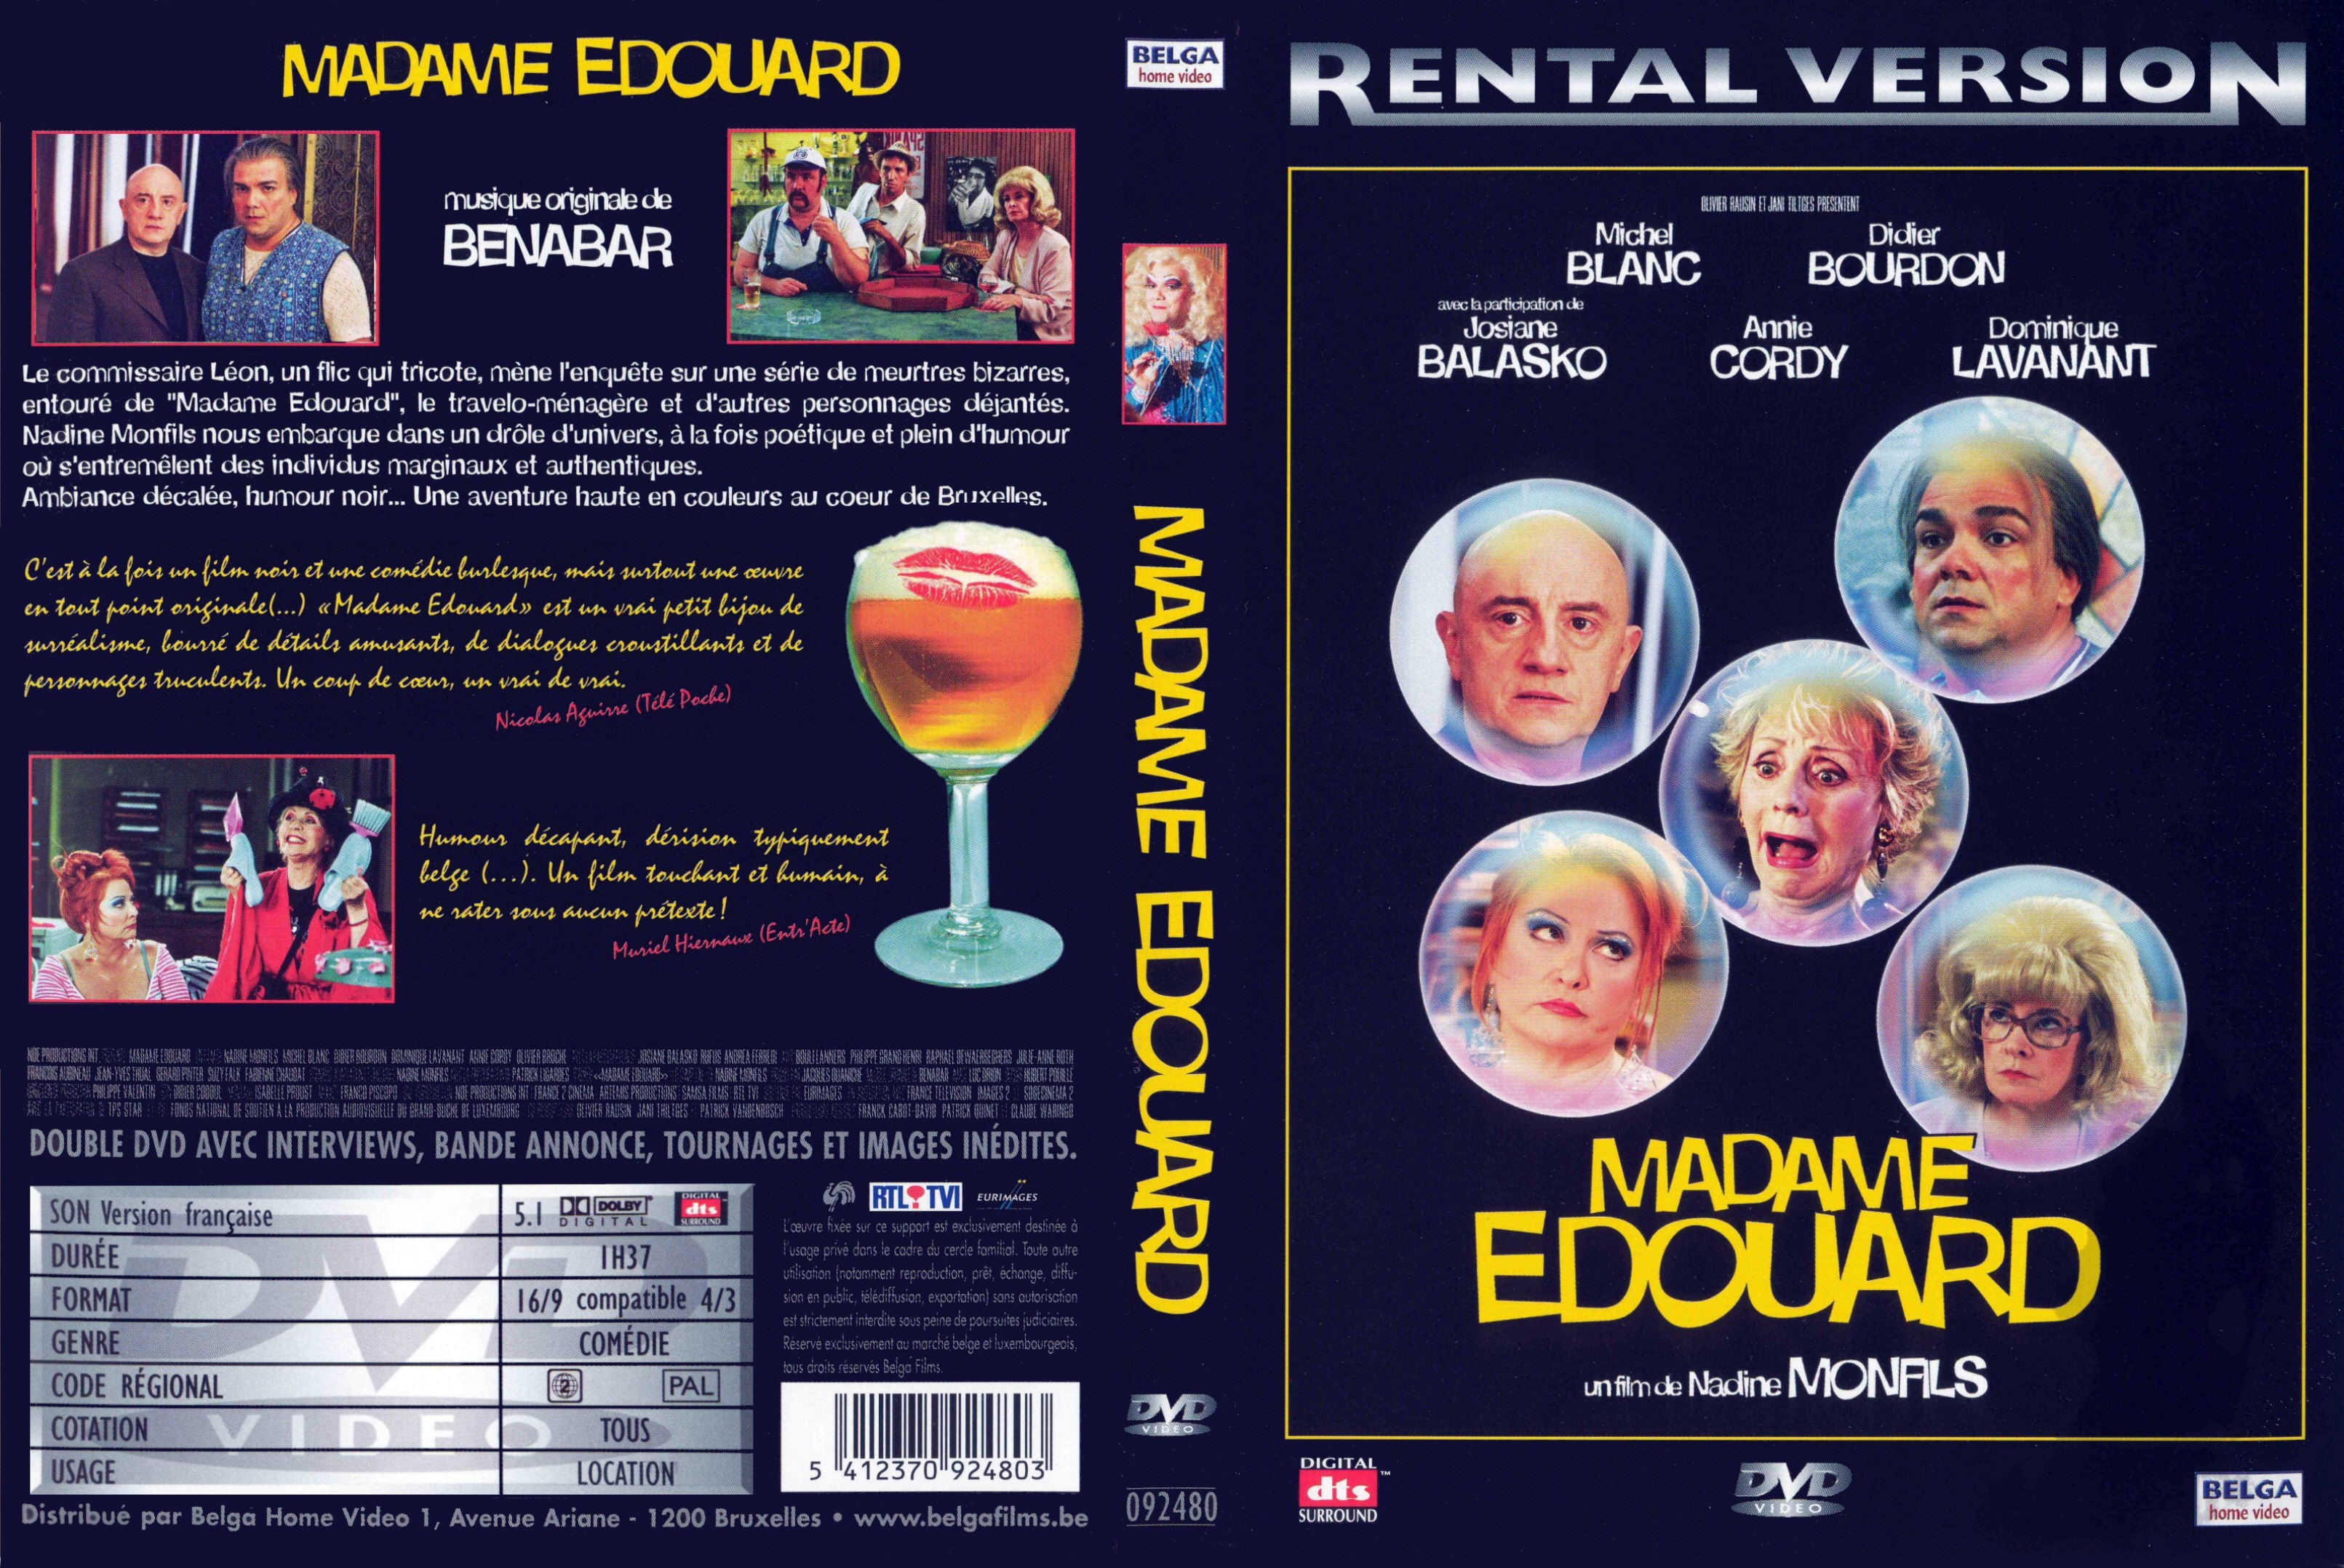 Jaquette DVD Madame Edouard v2